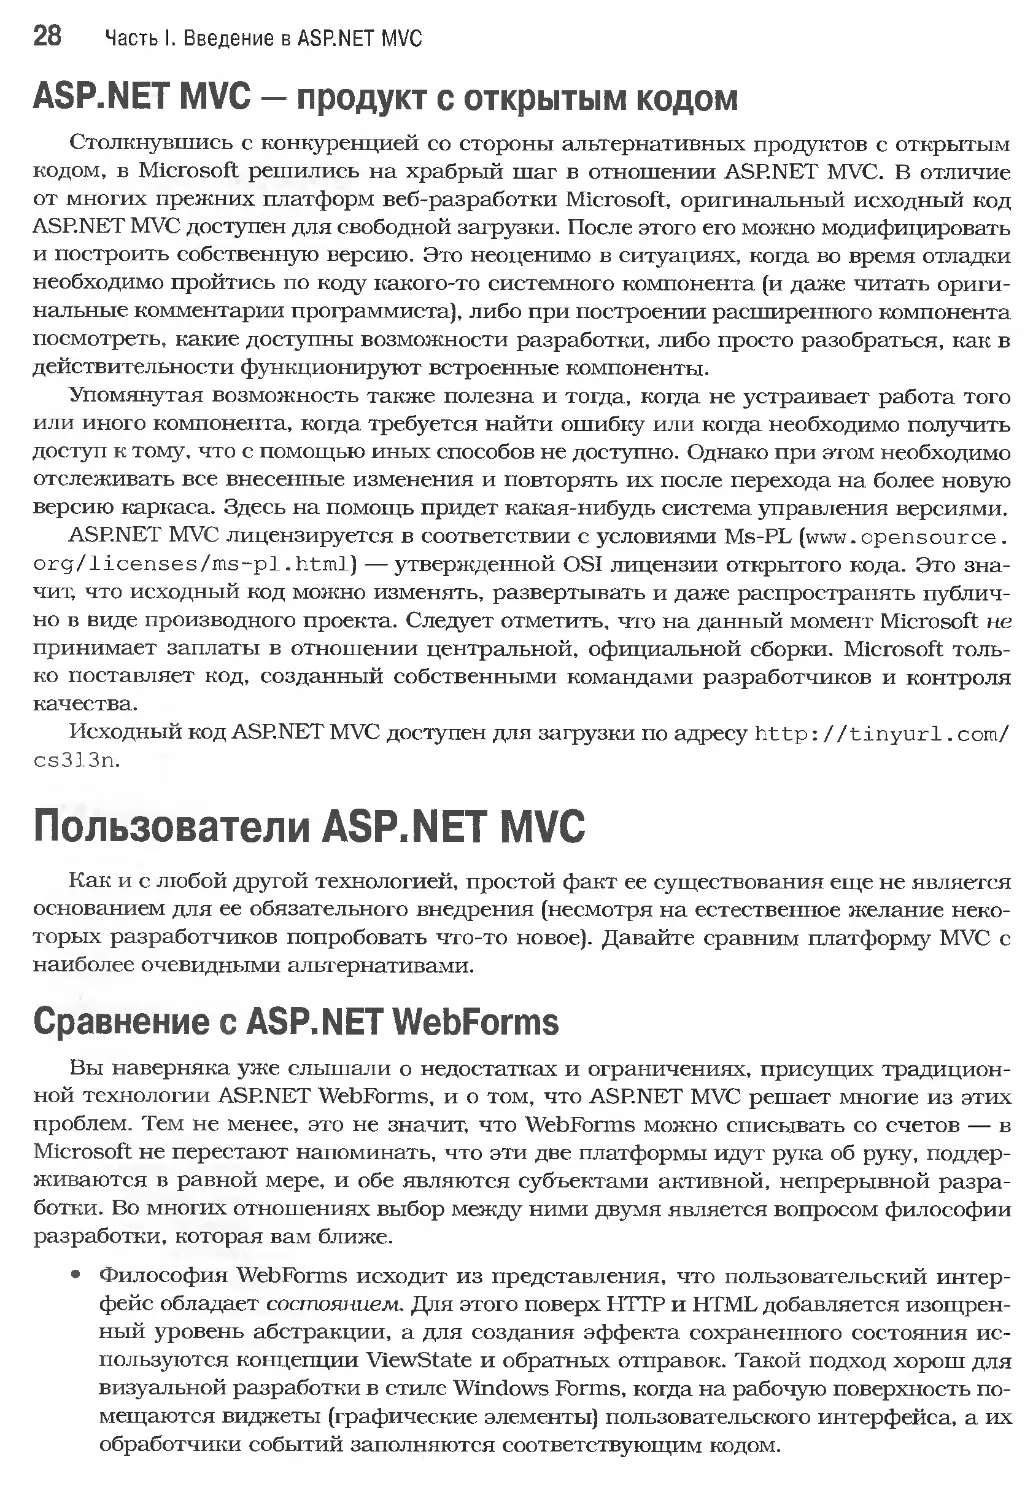 ASP.NET MVC - продукт с открытым кодом
Пользователи ASP.NET MVC